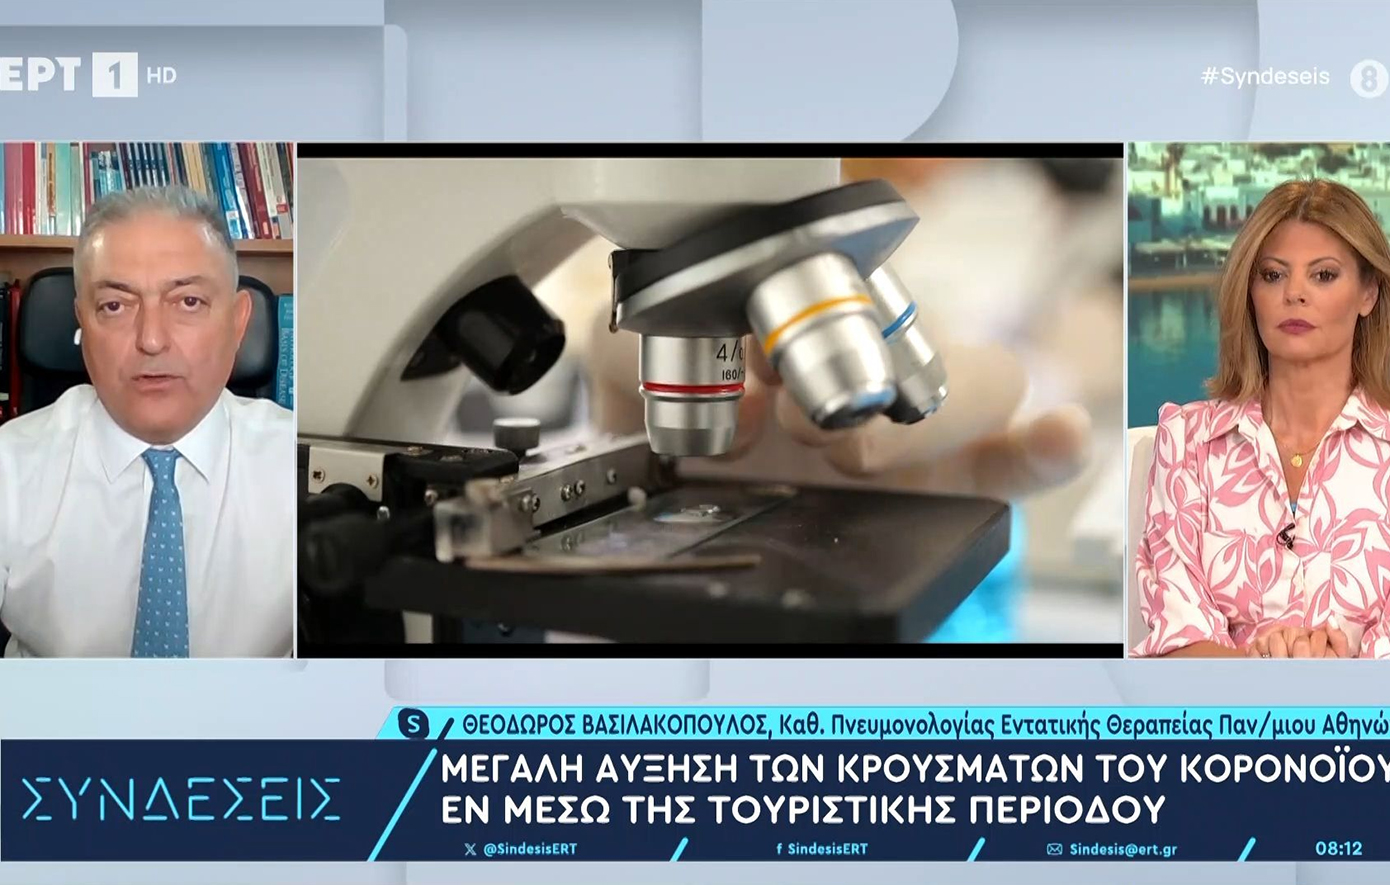 Βασιλακόπουλος &#8211; κορονοϊός: Ο βασικότερος λόγος της έξαρσης είναι ότι εμβολιάστηκαν πολύ λίγοι